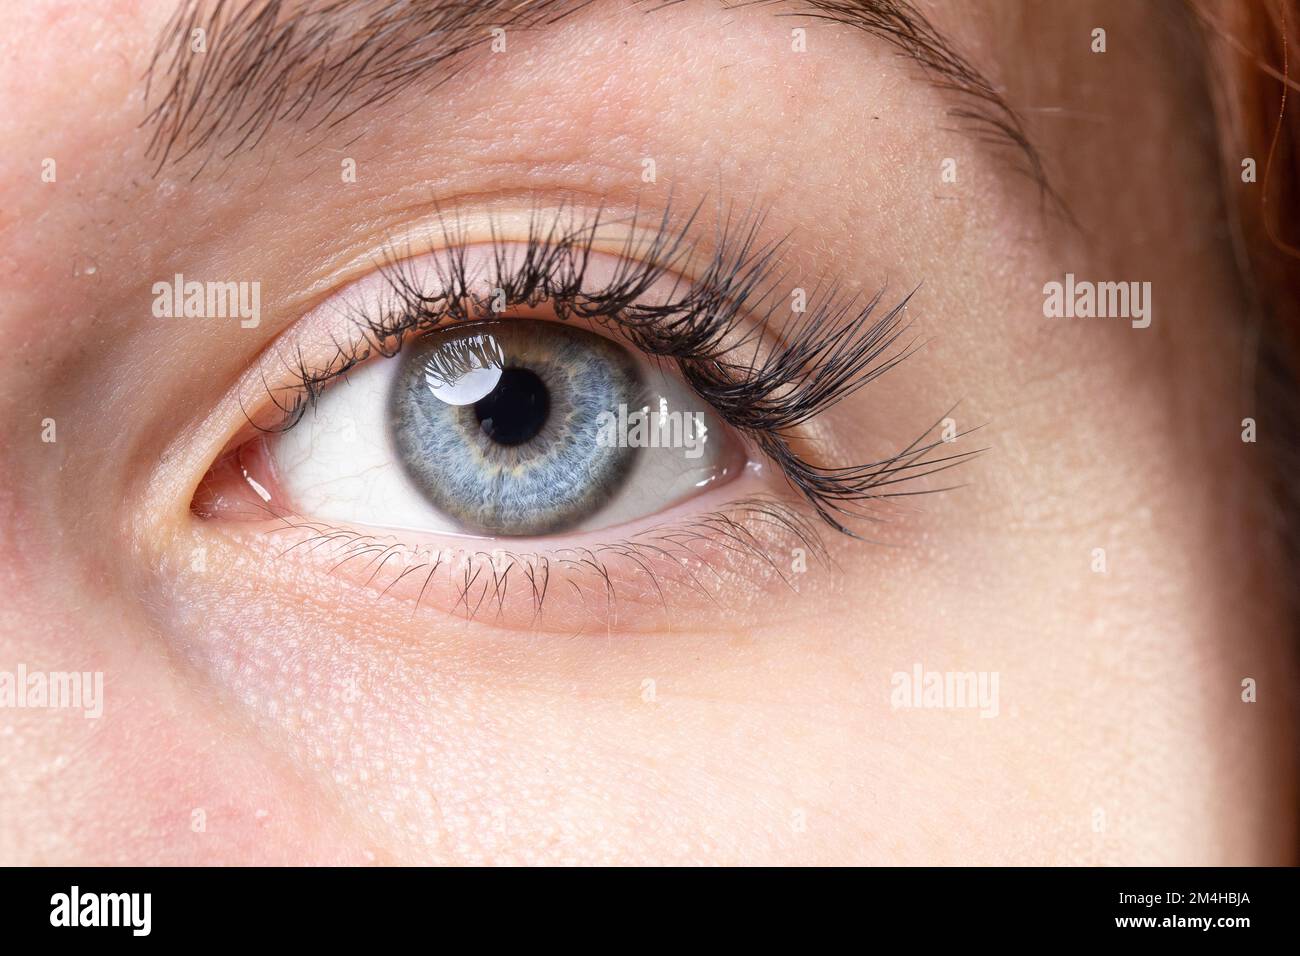 Nahaufnahme des blauen Auges eines Mädchens mit rotem Haar. Sehvermögen und Augenkrankheiten. Makelloses Auge eines kaukasischen Modells Stockfoto